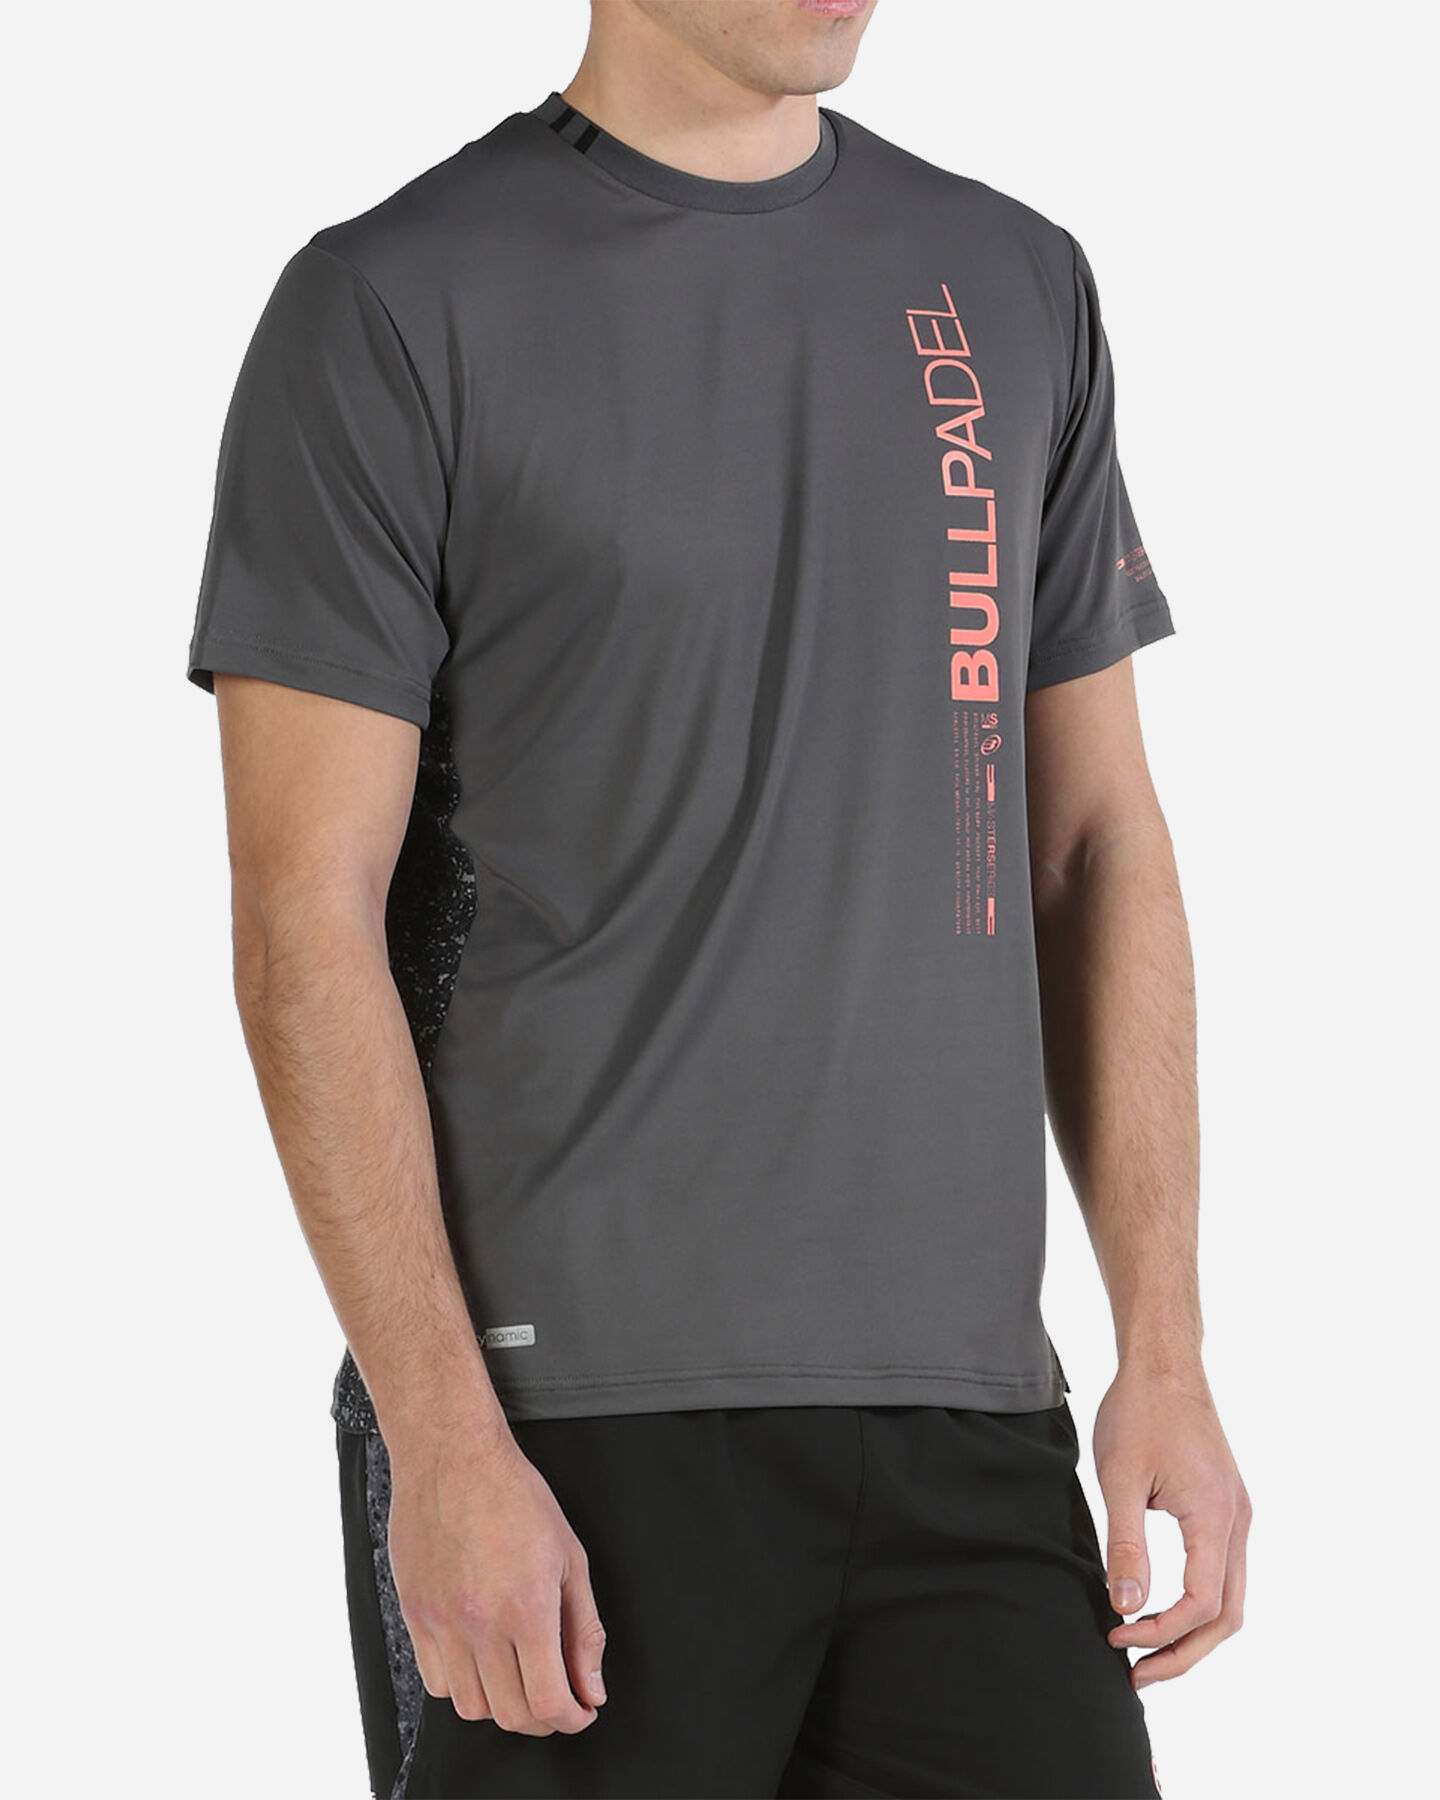  T-Shirt tennis BULLPADEL MIXTA M S5497724 scatto 1